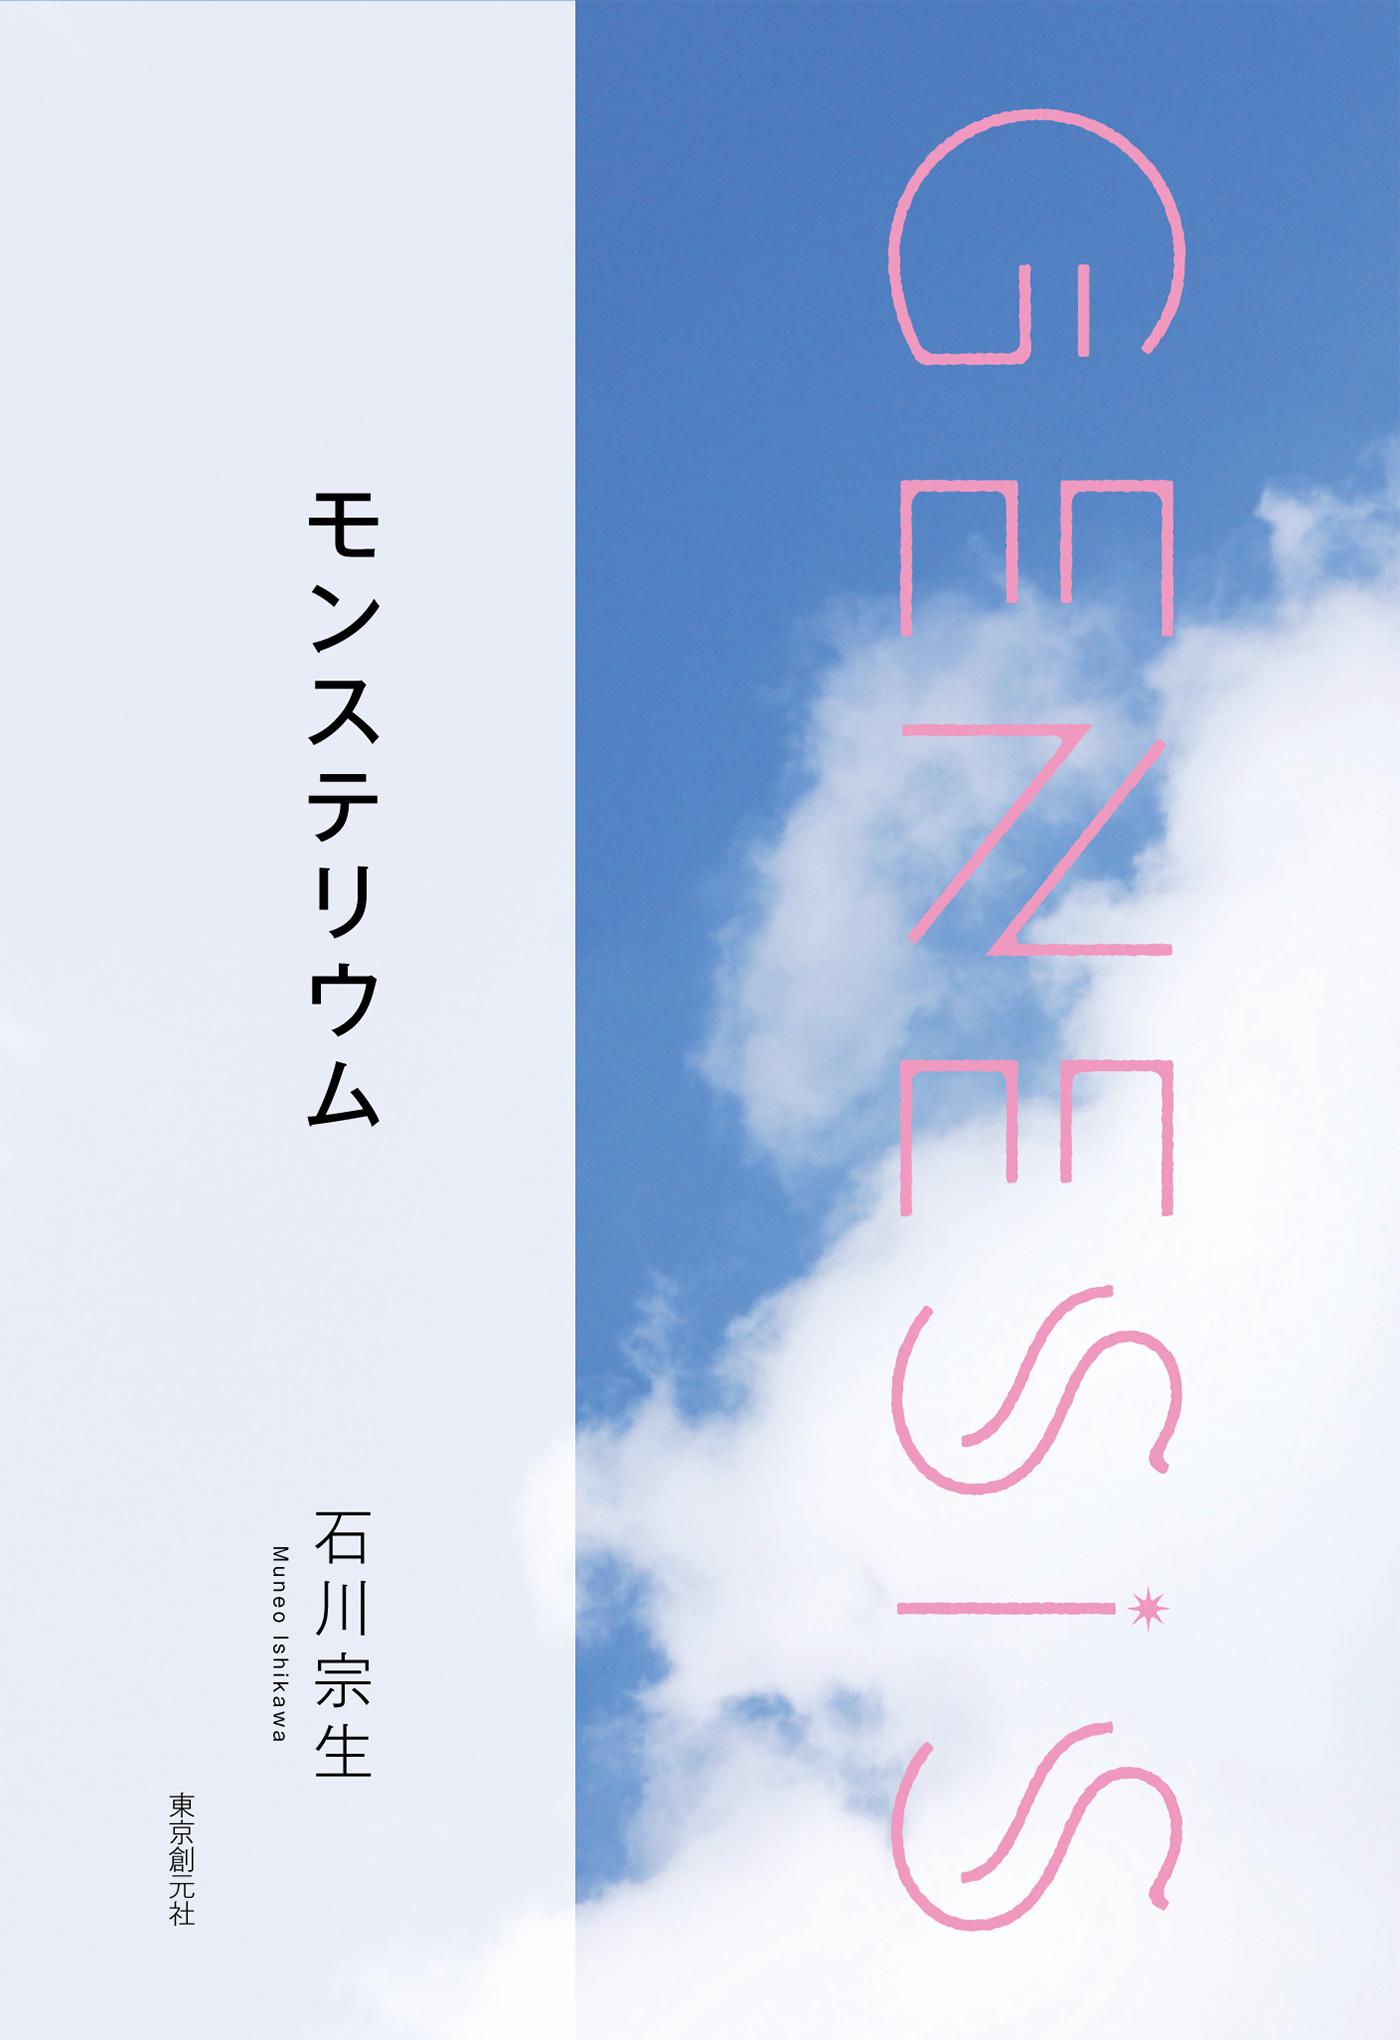 モンステリウム-Genesis SOGEN Japanese SF anthology 2019-